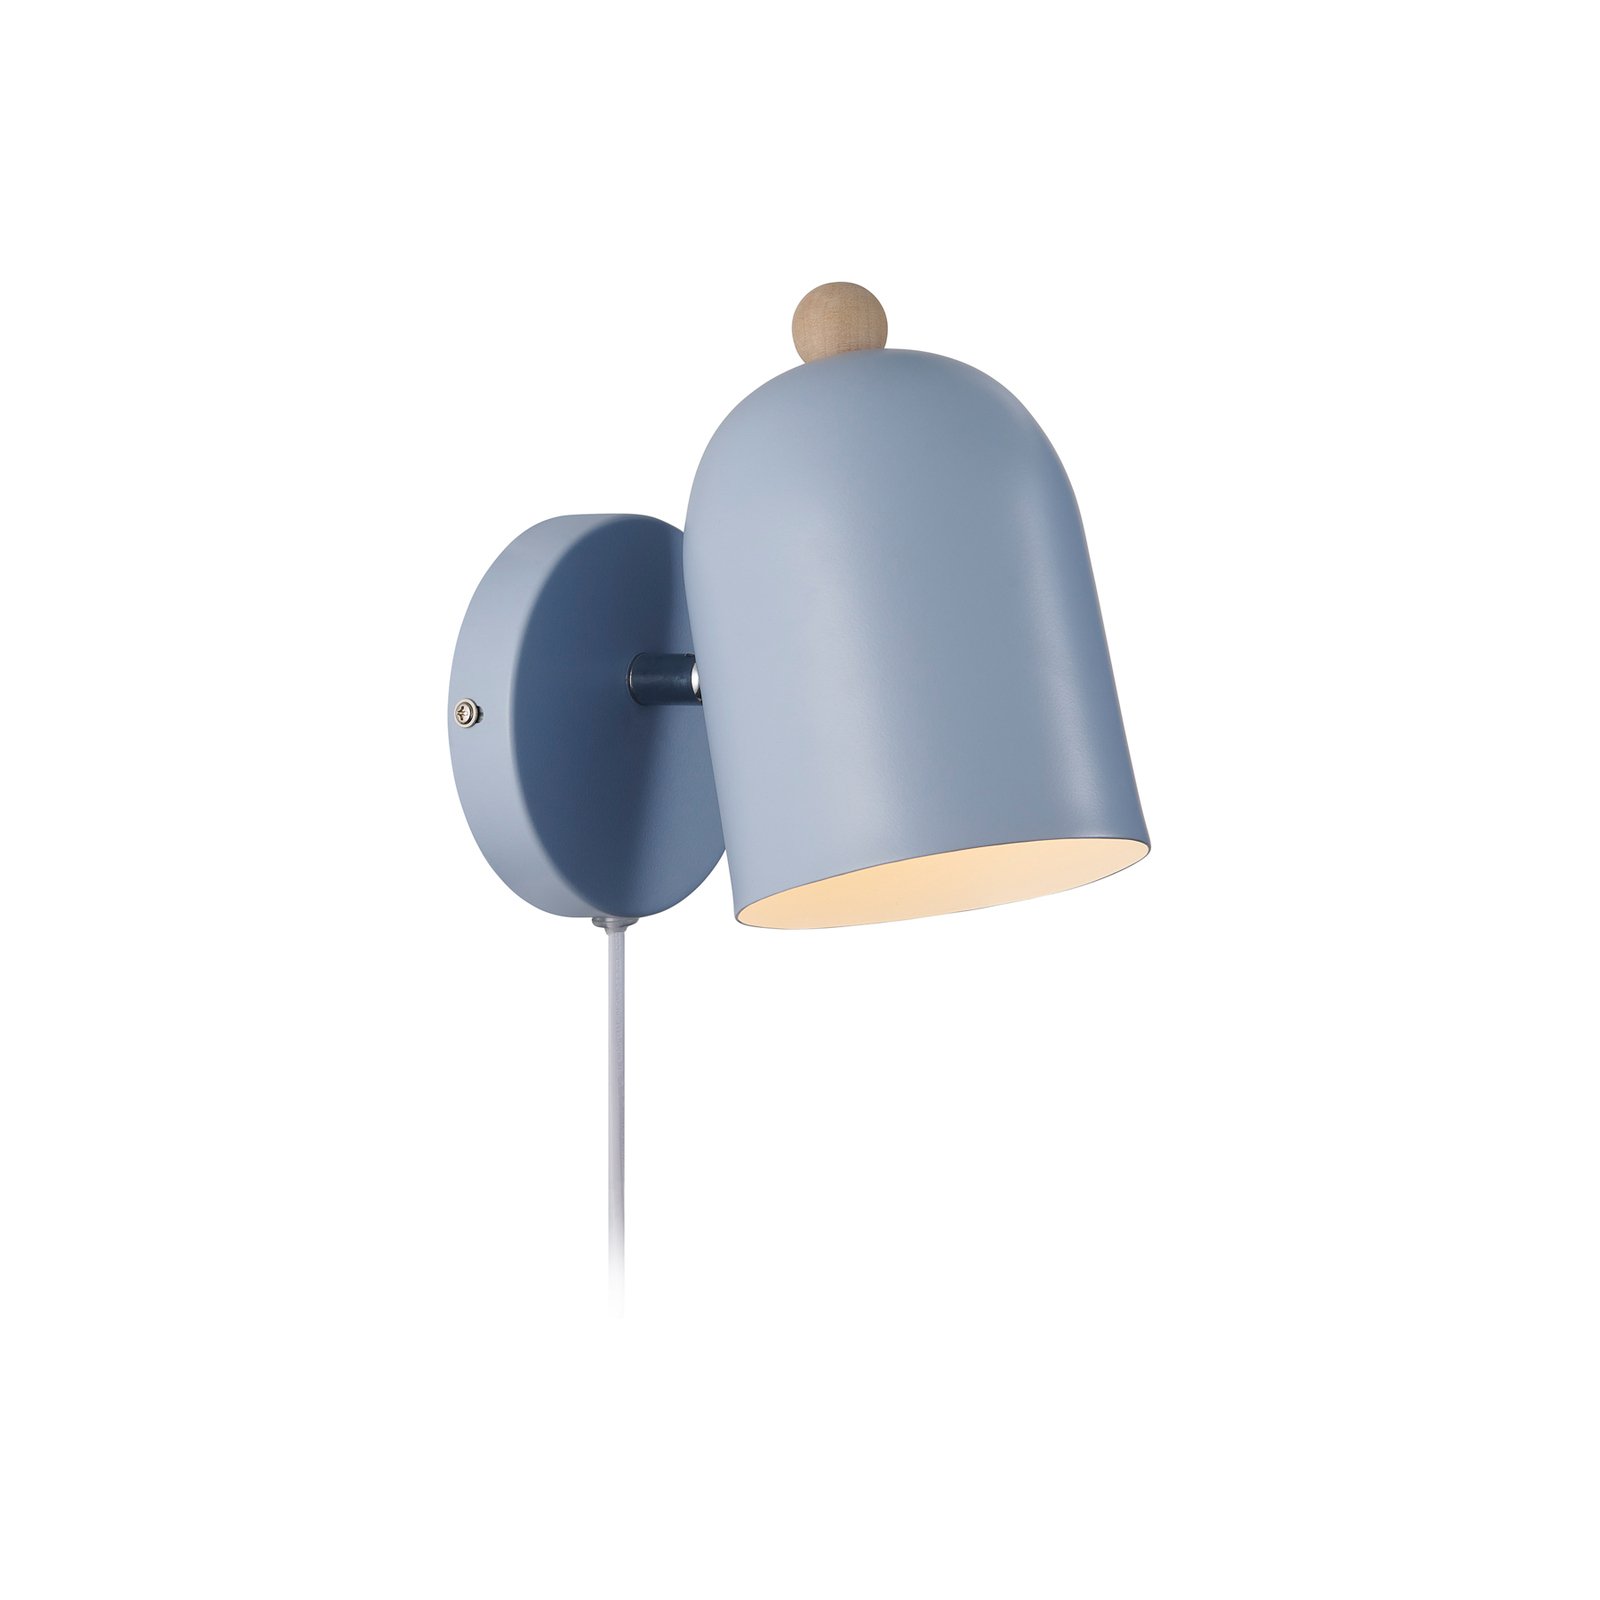 Gaston zidna svjetiljka s kablom i utikačem, metalna, plava